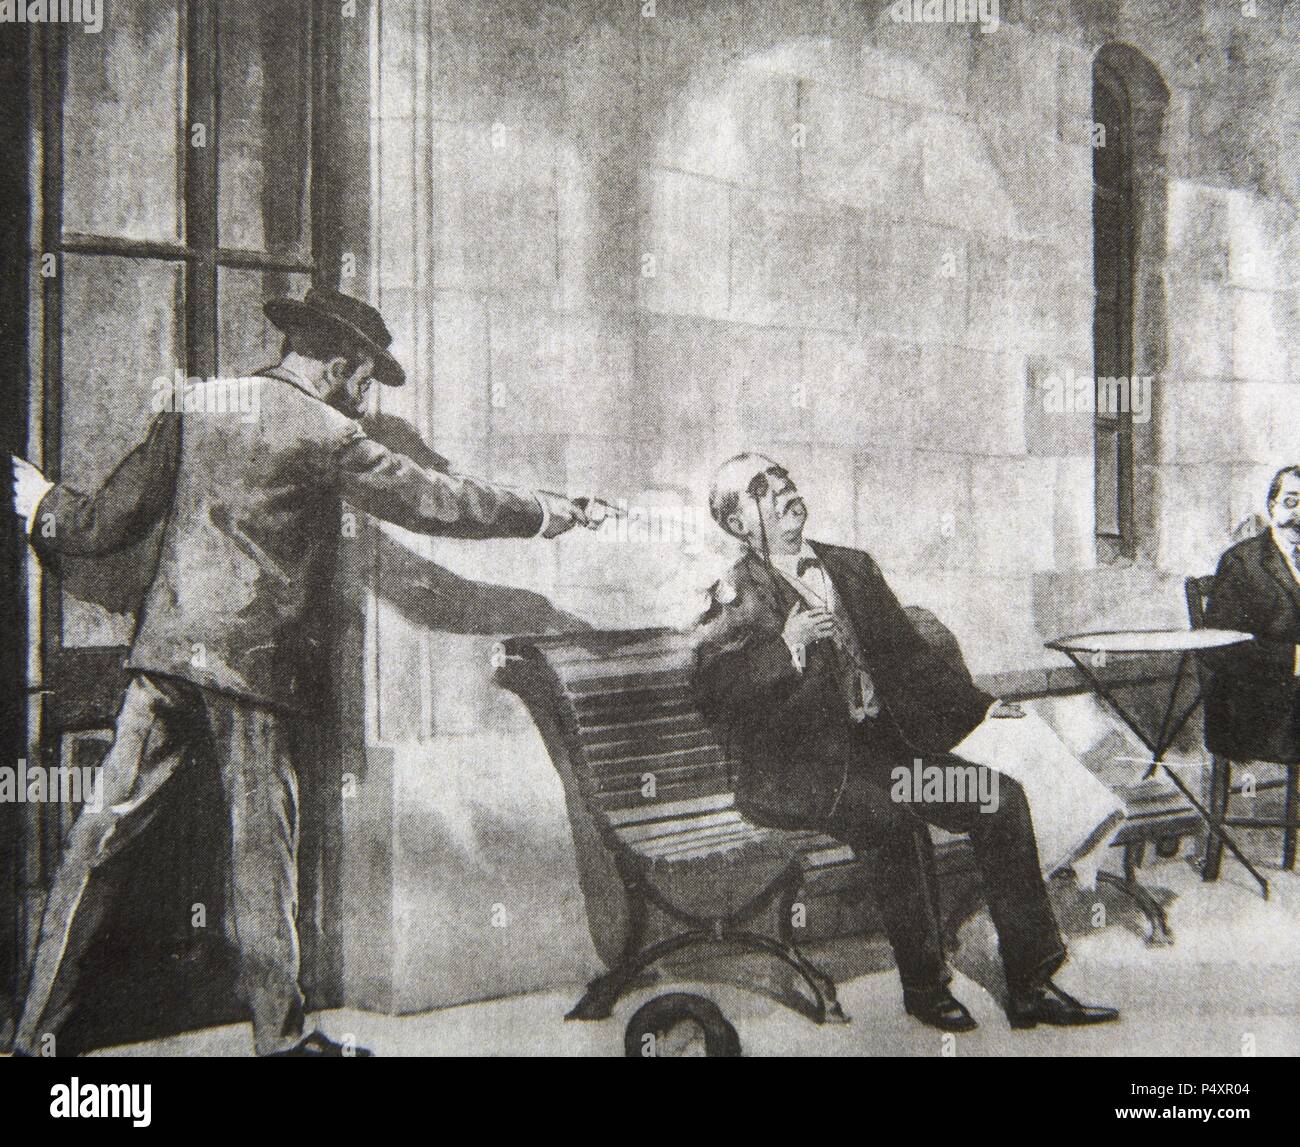 Antonio Canovas del Castillo (1828-1897). Spanische Politiker. Ermordung von Canovas del Castillo von der Anarchistischen Angiolillo in der Ortschaft Santa Agueda, 1897. Die spanische und amerikanische Abbildung. Stockfoto